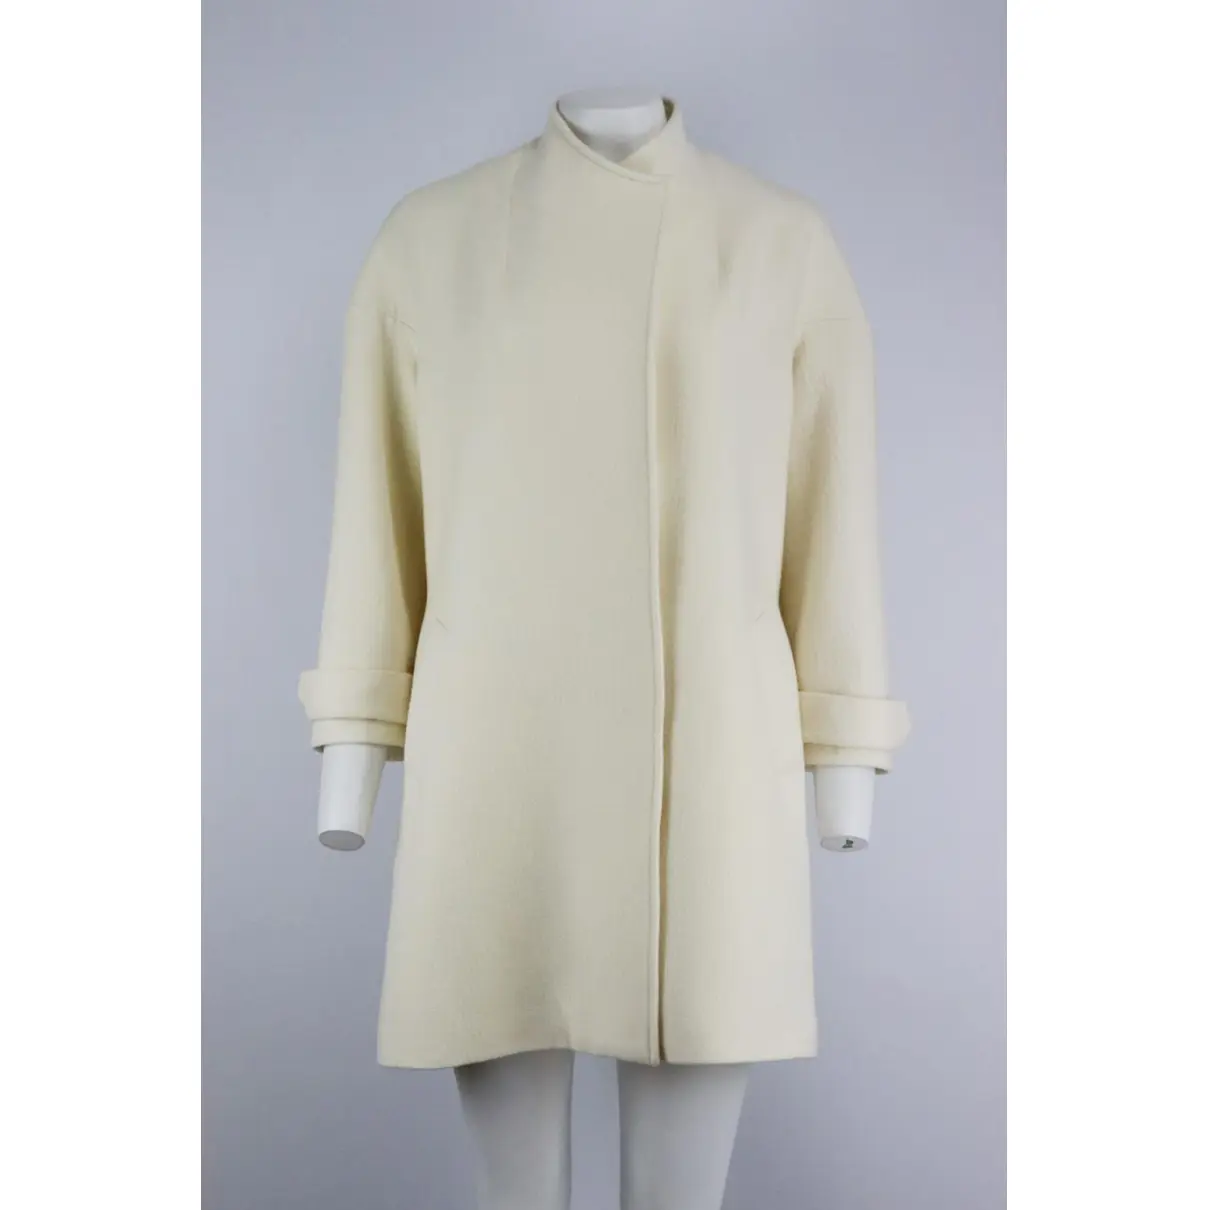 Buy Alice & Olivia Wool coat online